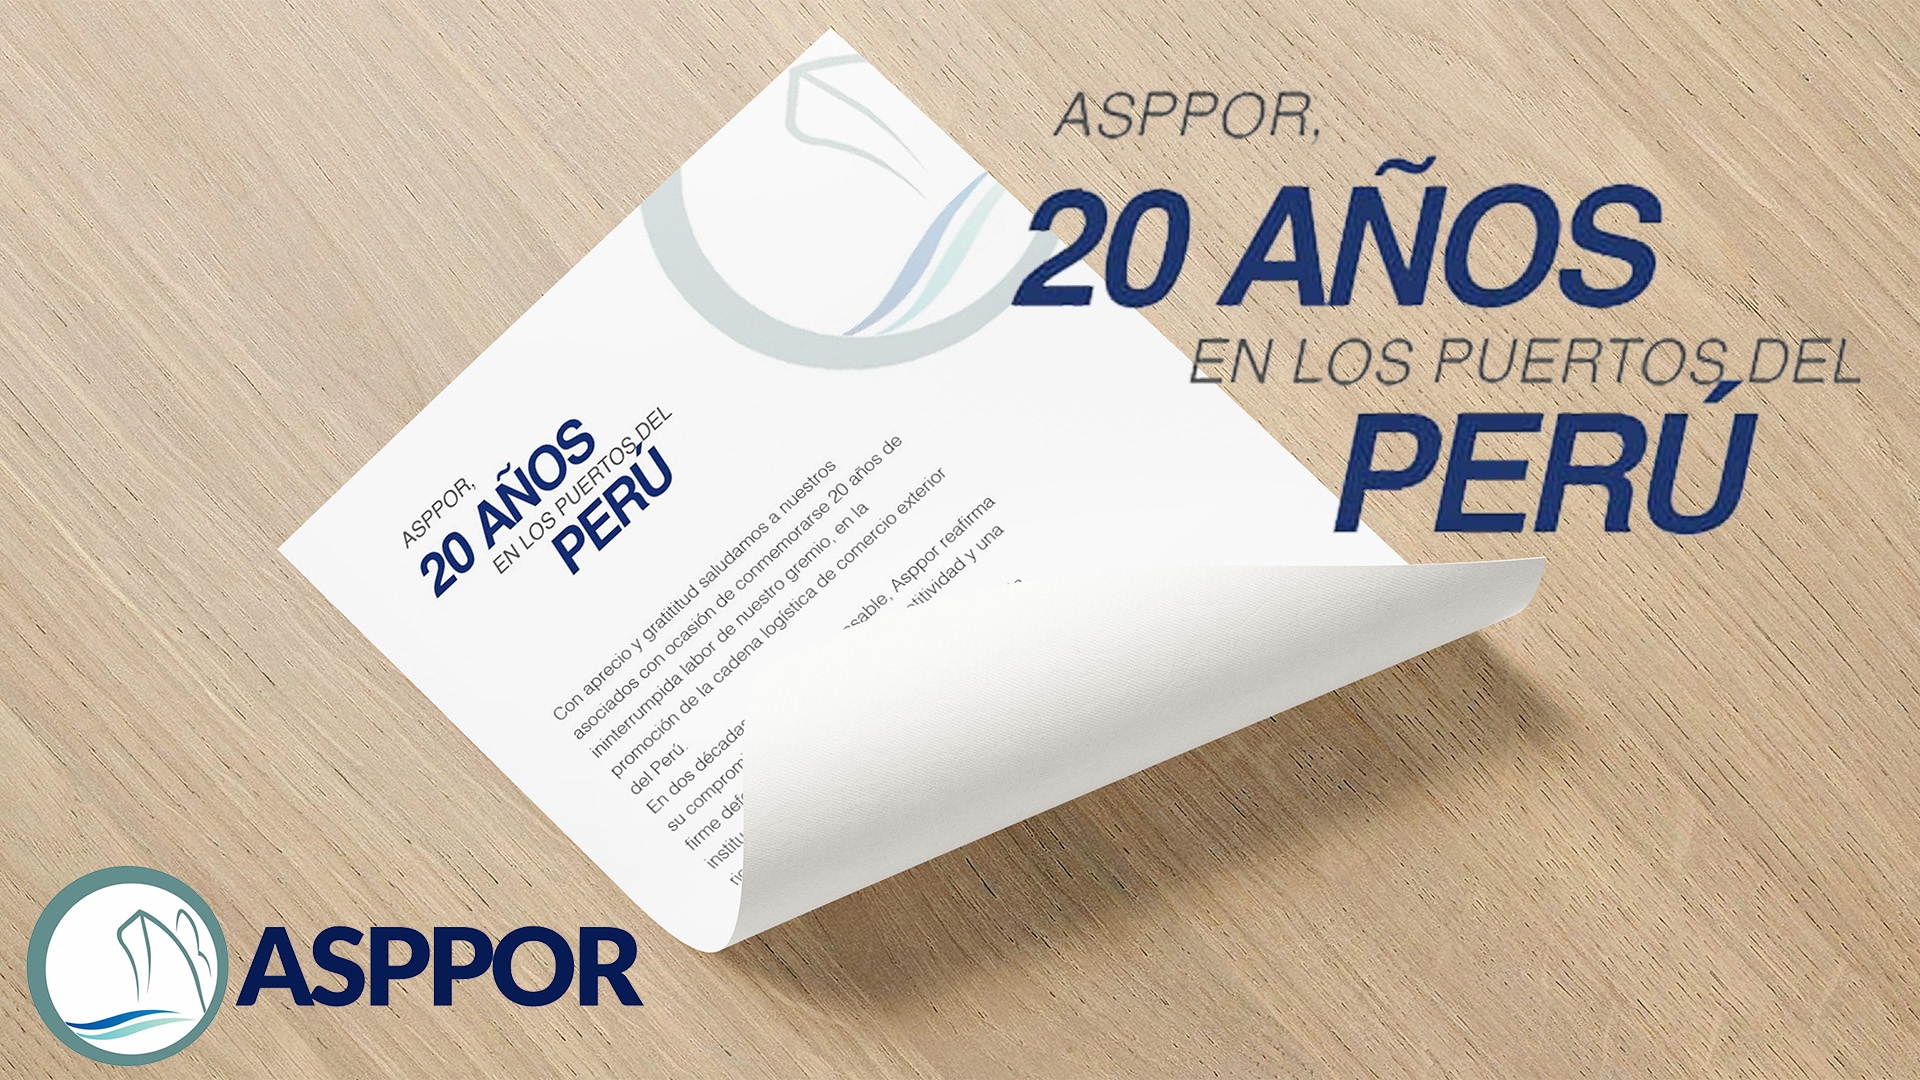 ASPPOR, 20 AÑOS EN LOS PUERTOS DEL PERÚ